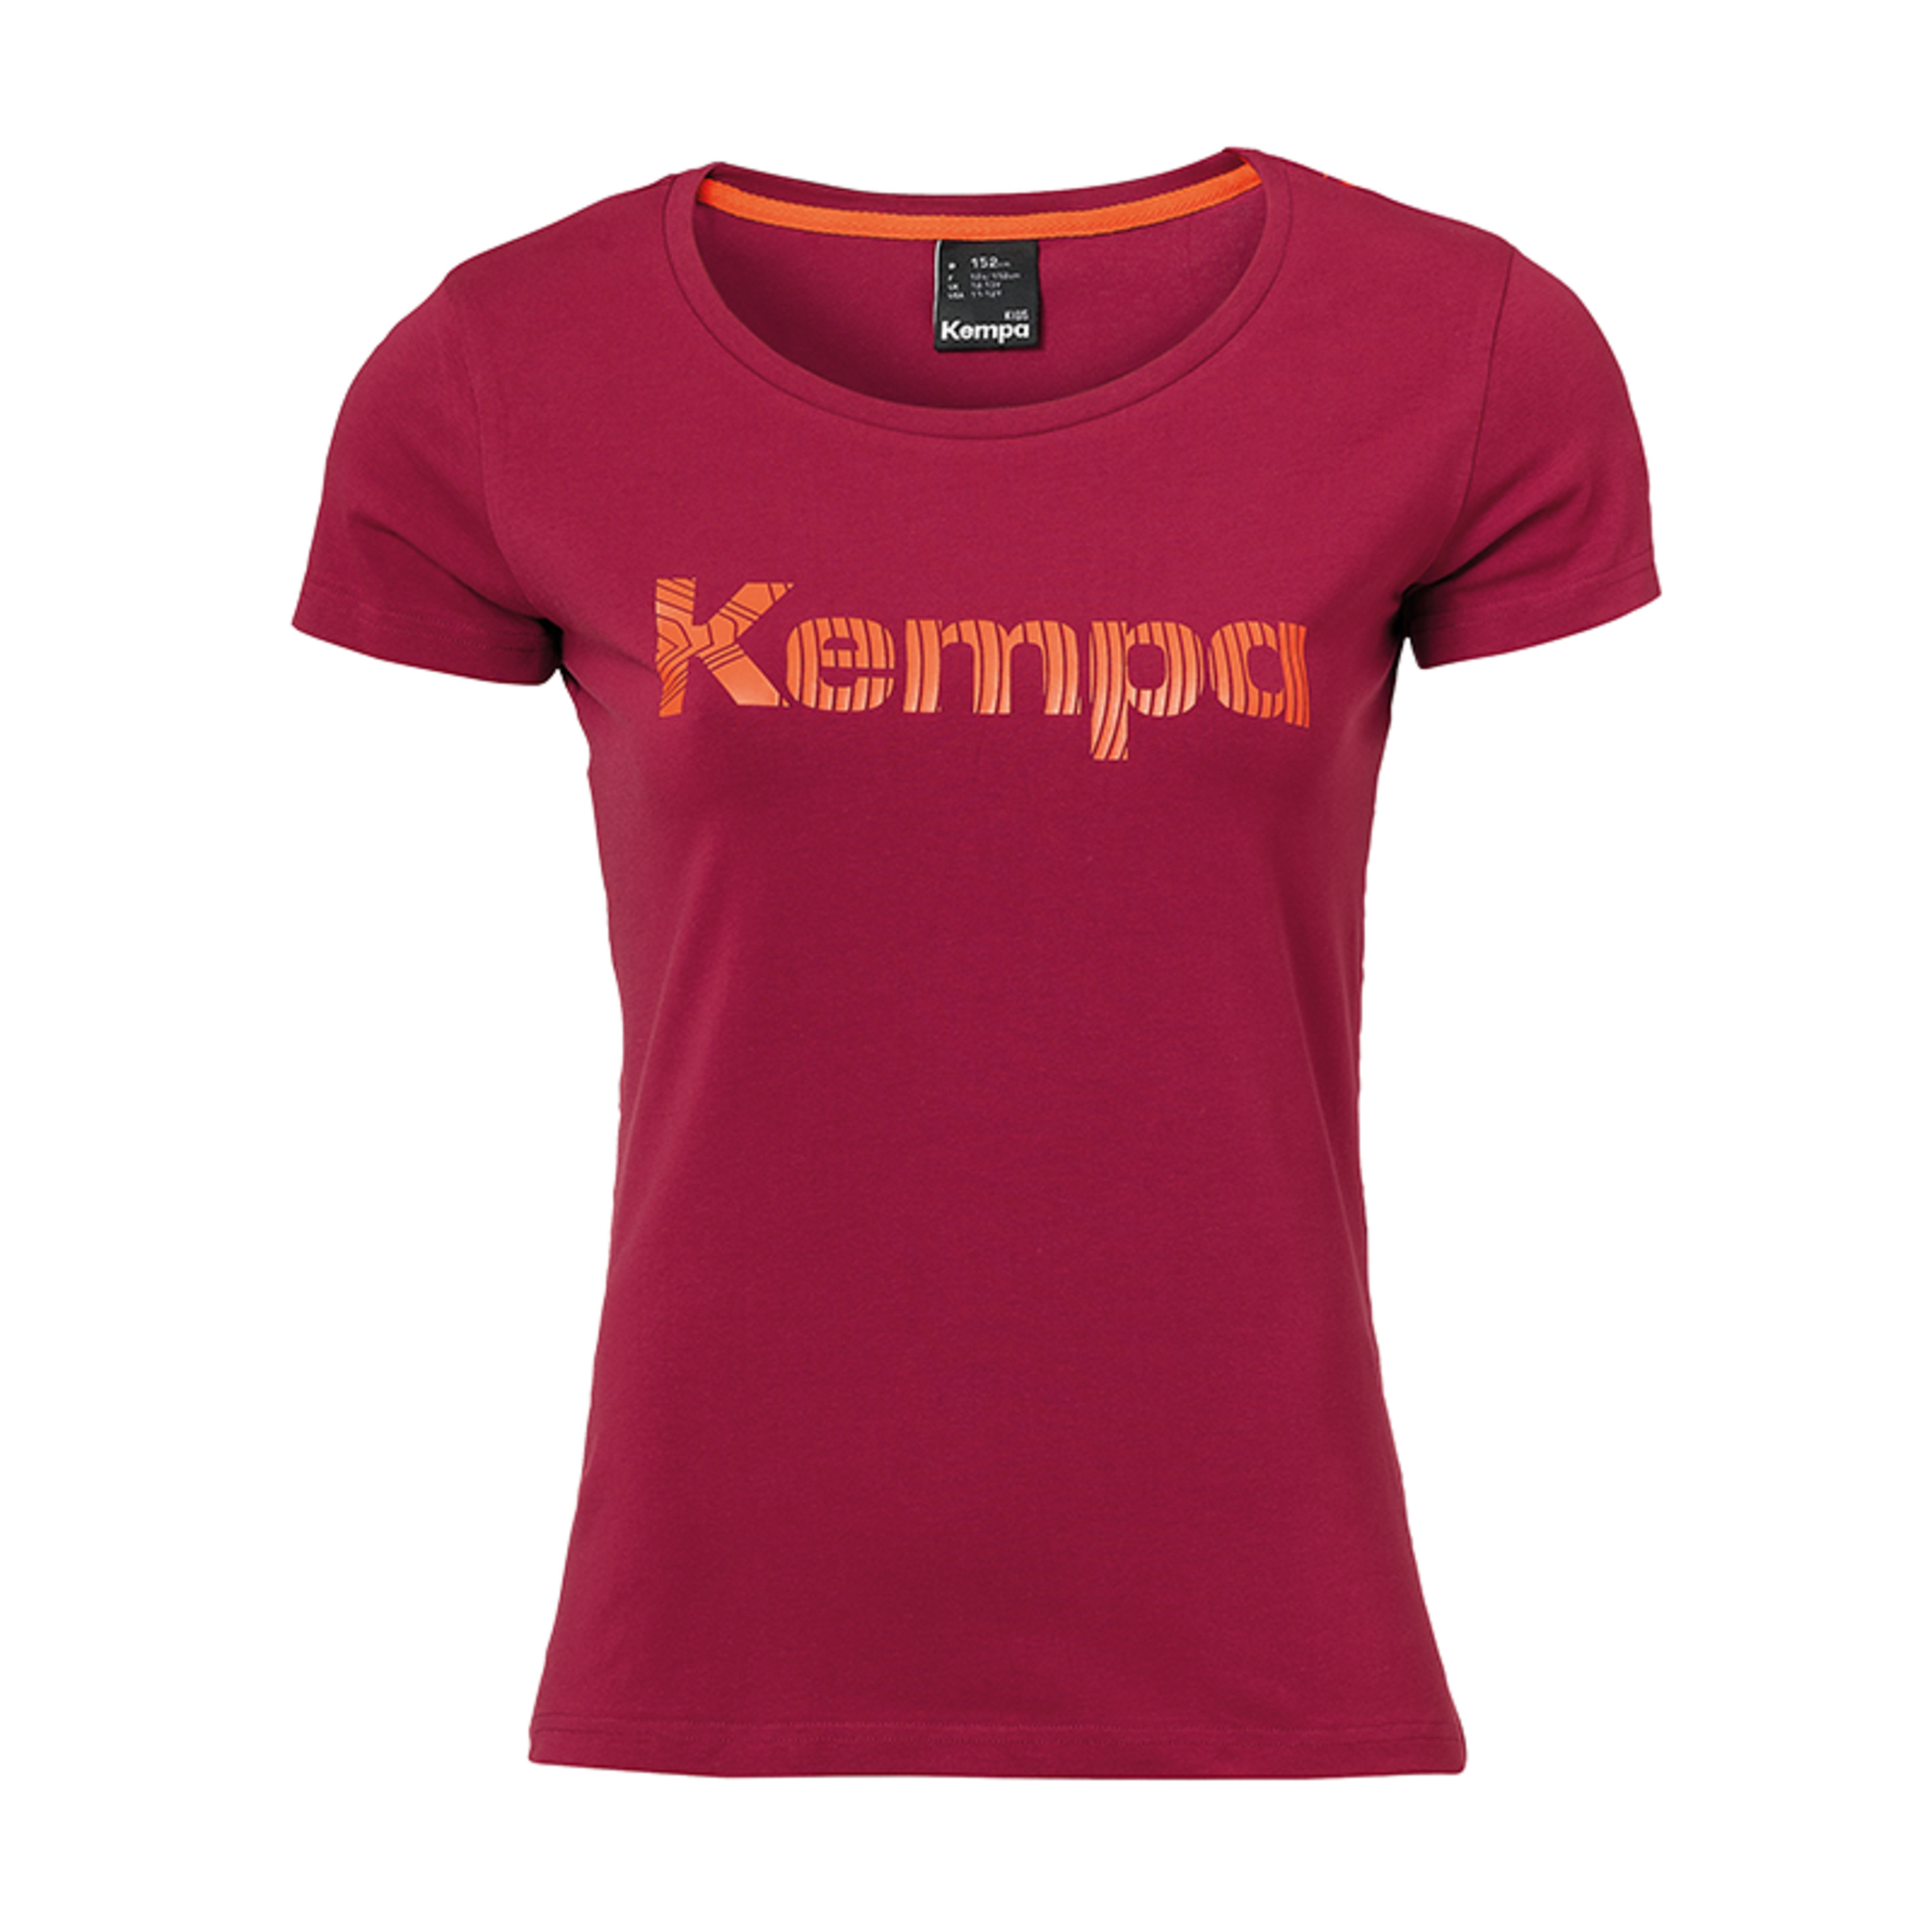 Graphic T-shirt Girls Rojo Oscuro Kempa